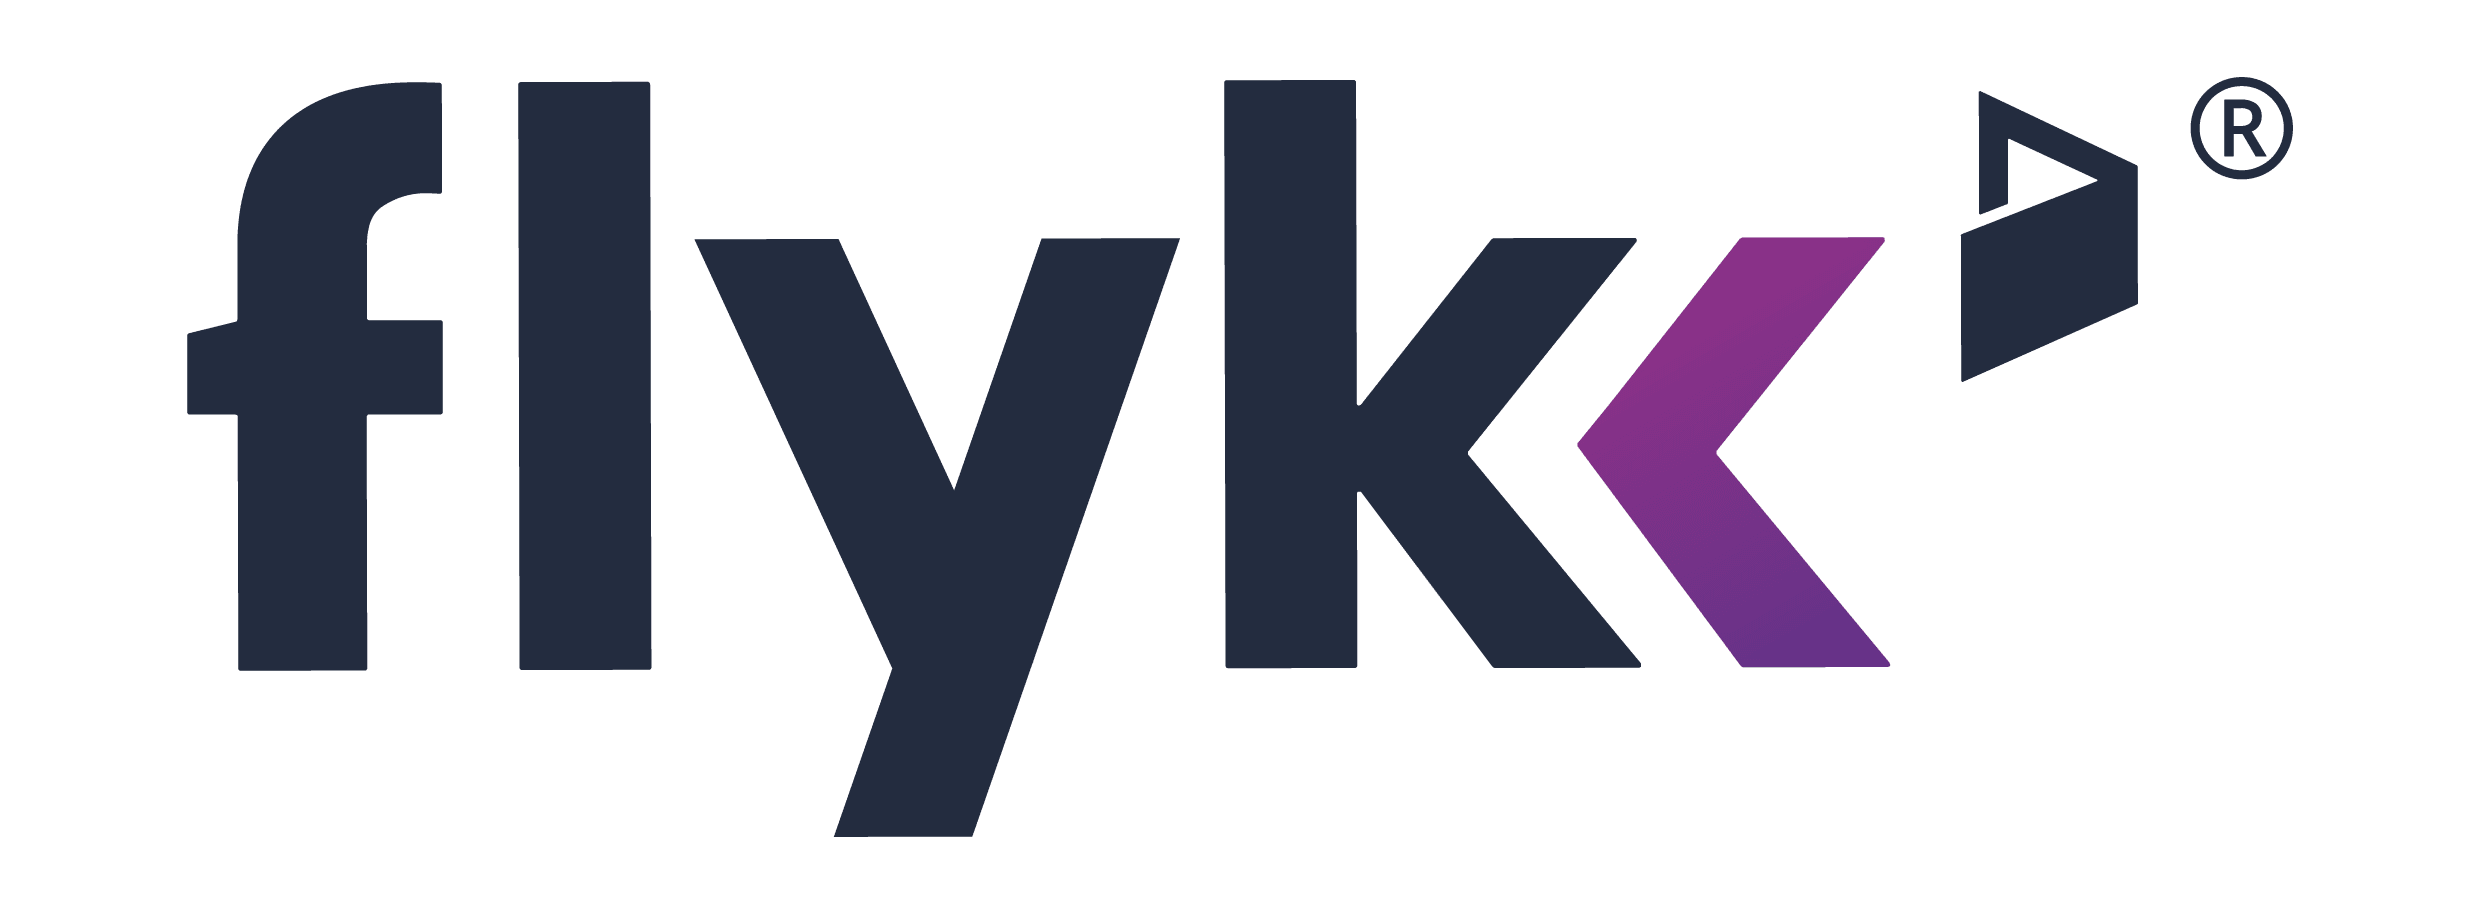 Os melhores Casino Online com a Flykk em Portugal